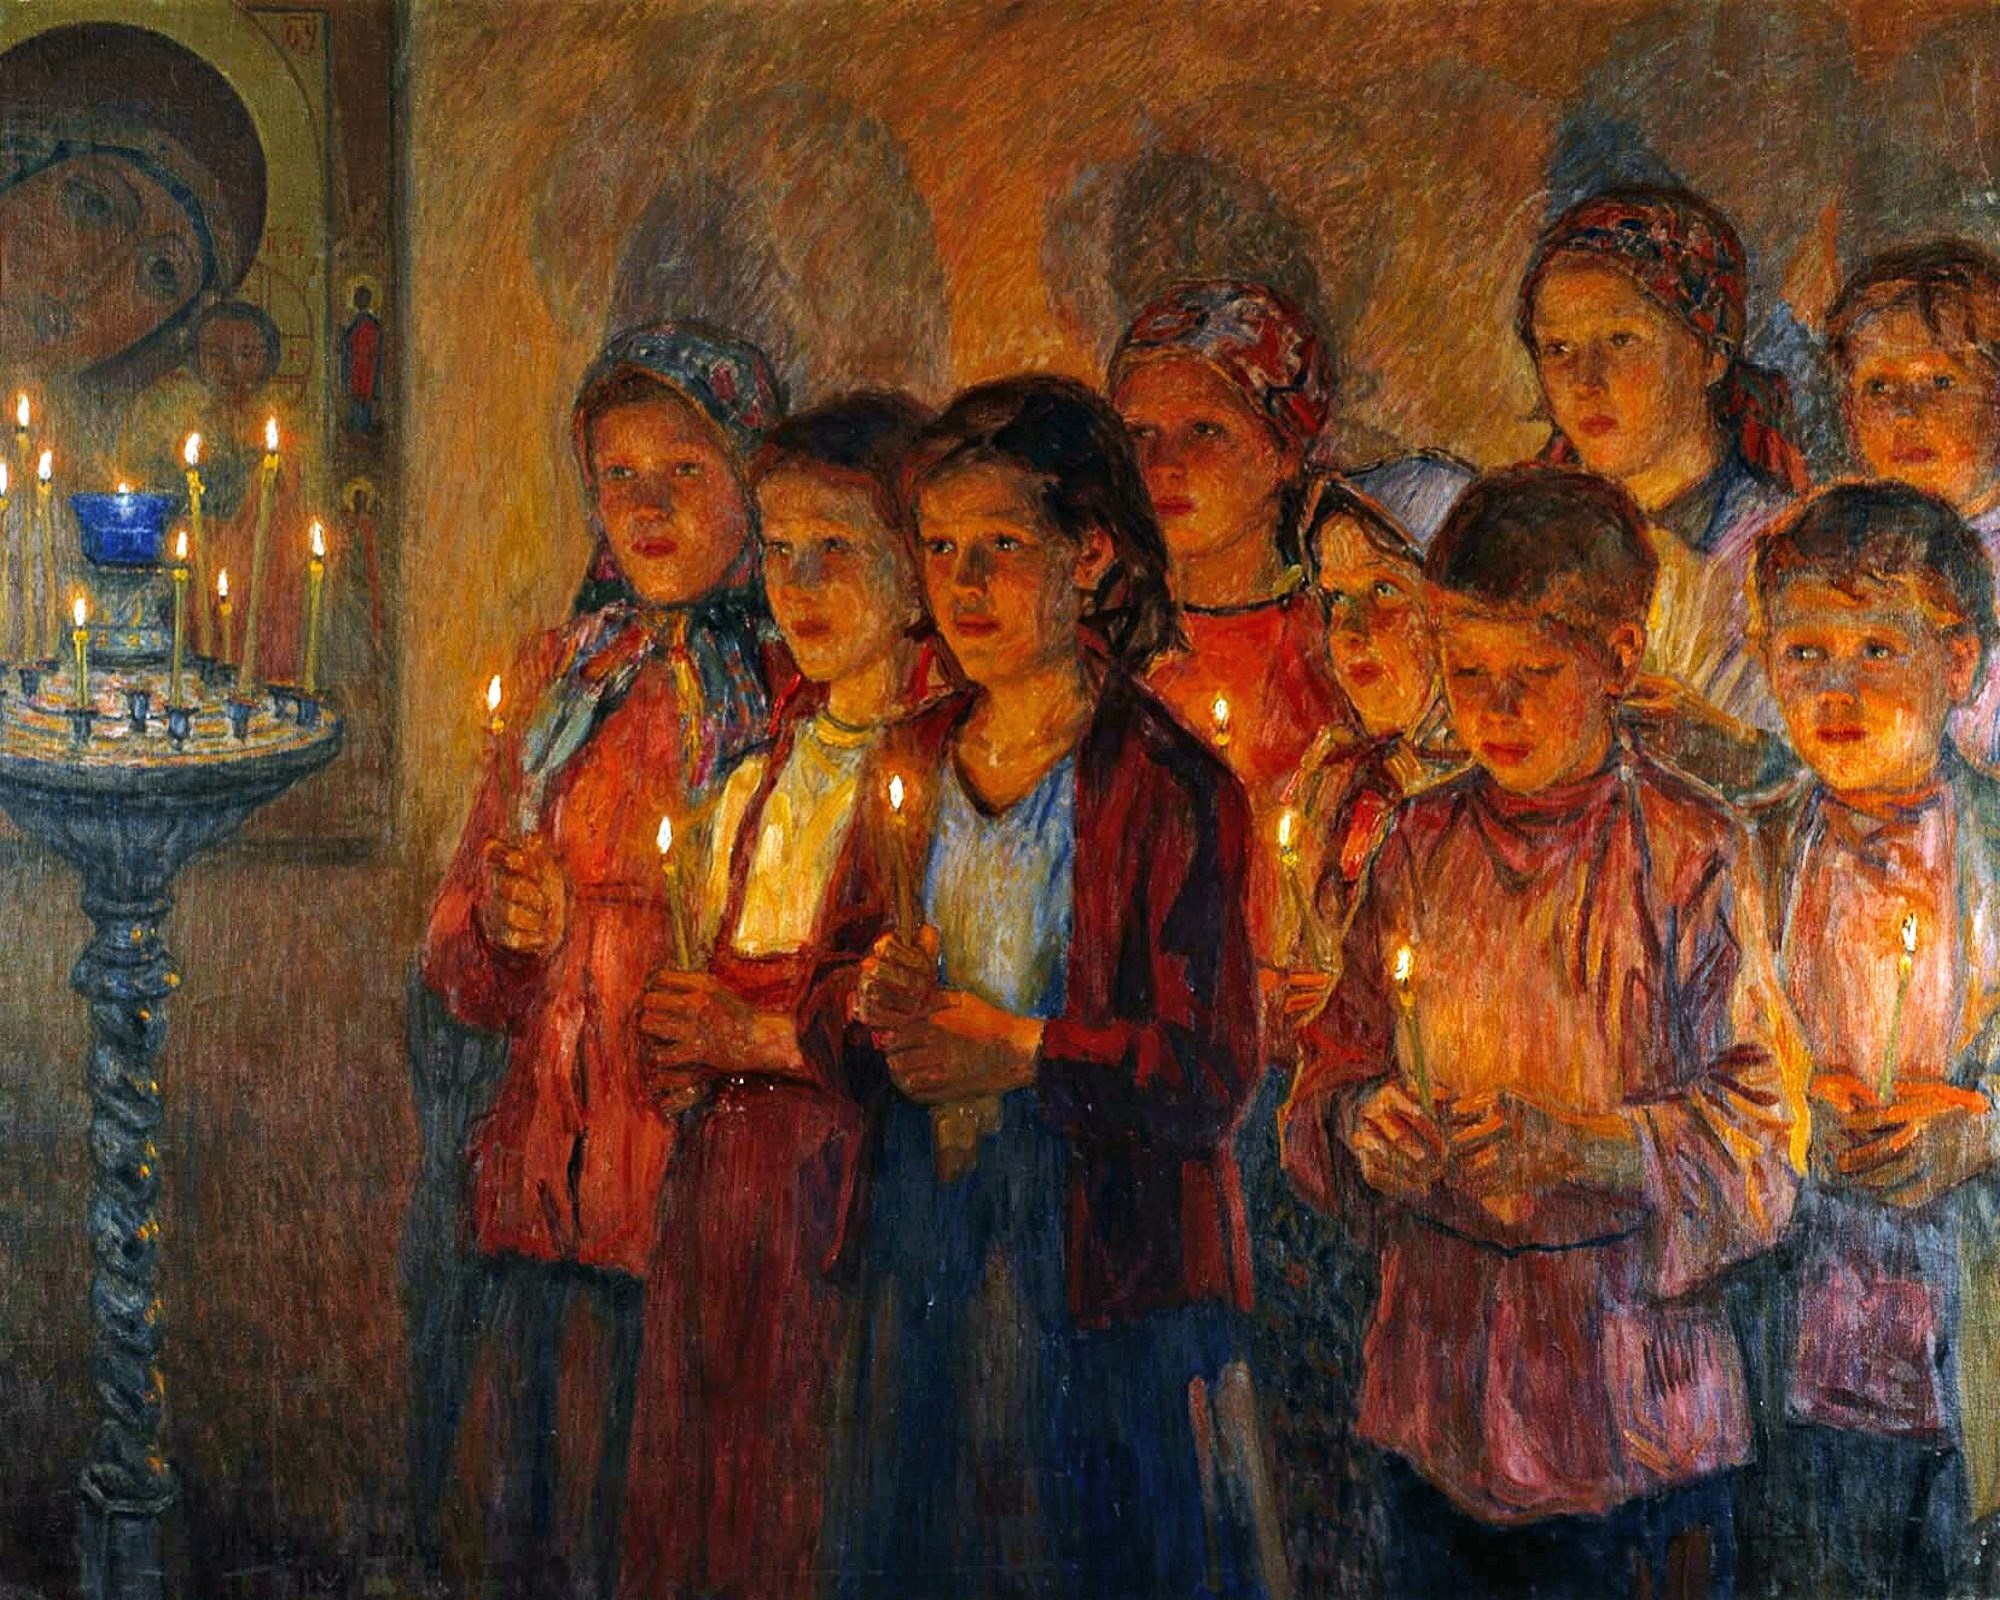 Воскресная традиция. Картина в церкви Богданов Бельский. Богданов Бельский в церкви.